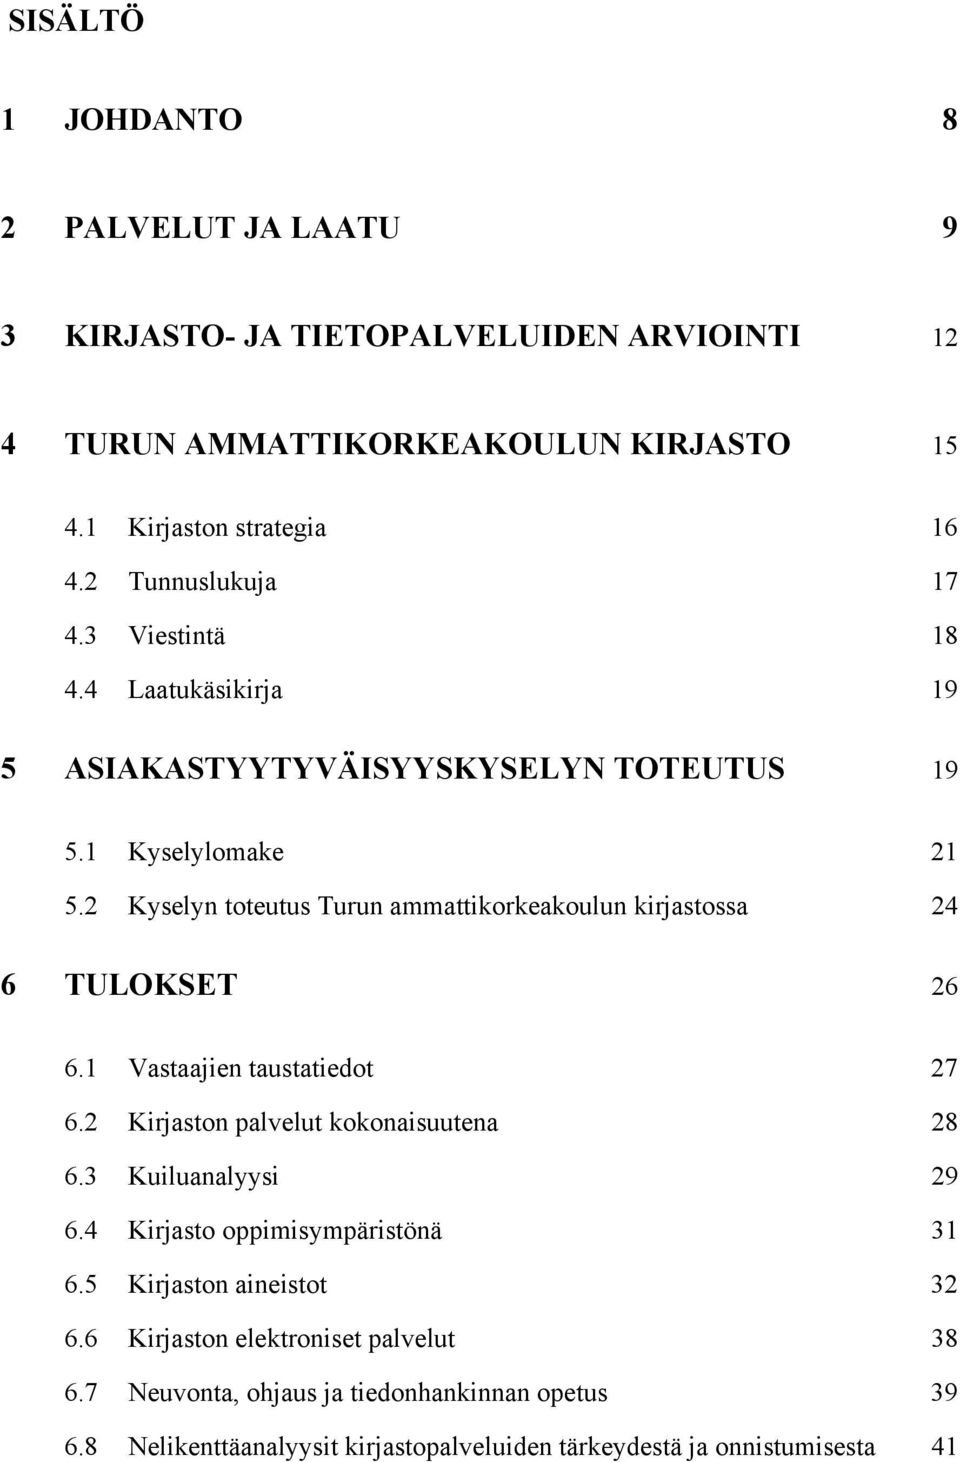 2 Kyselyn toteutus Turun ammattikorkeakoulun kirjastossa 24 6 TULOKSET 26 6.1 Vastaajien taustatiedot 27 6.2 Kirjaston palvelut kokonaisuutena 28 6.3 Kuiluanalyysi 29 6.